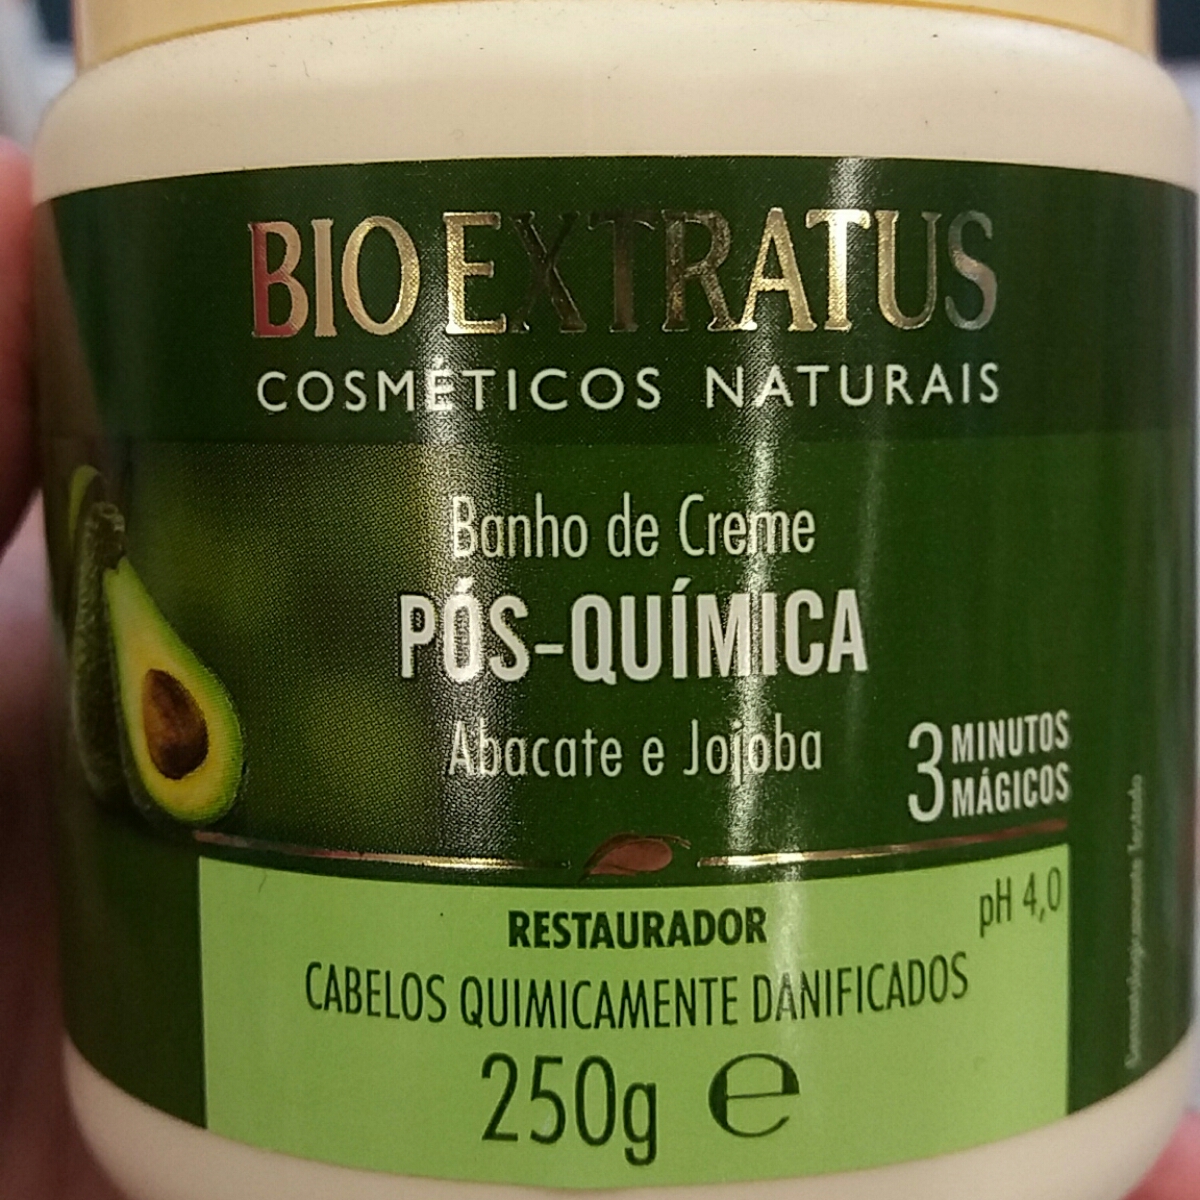 Bio Extratus Banho de Creme Pós Química Abacate e Jojoba Reviews | abillion